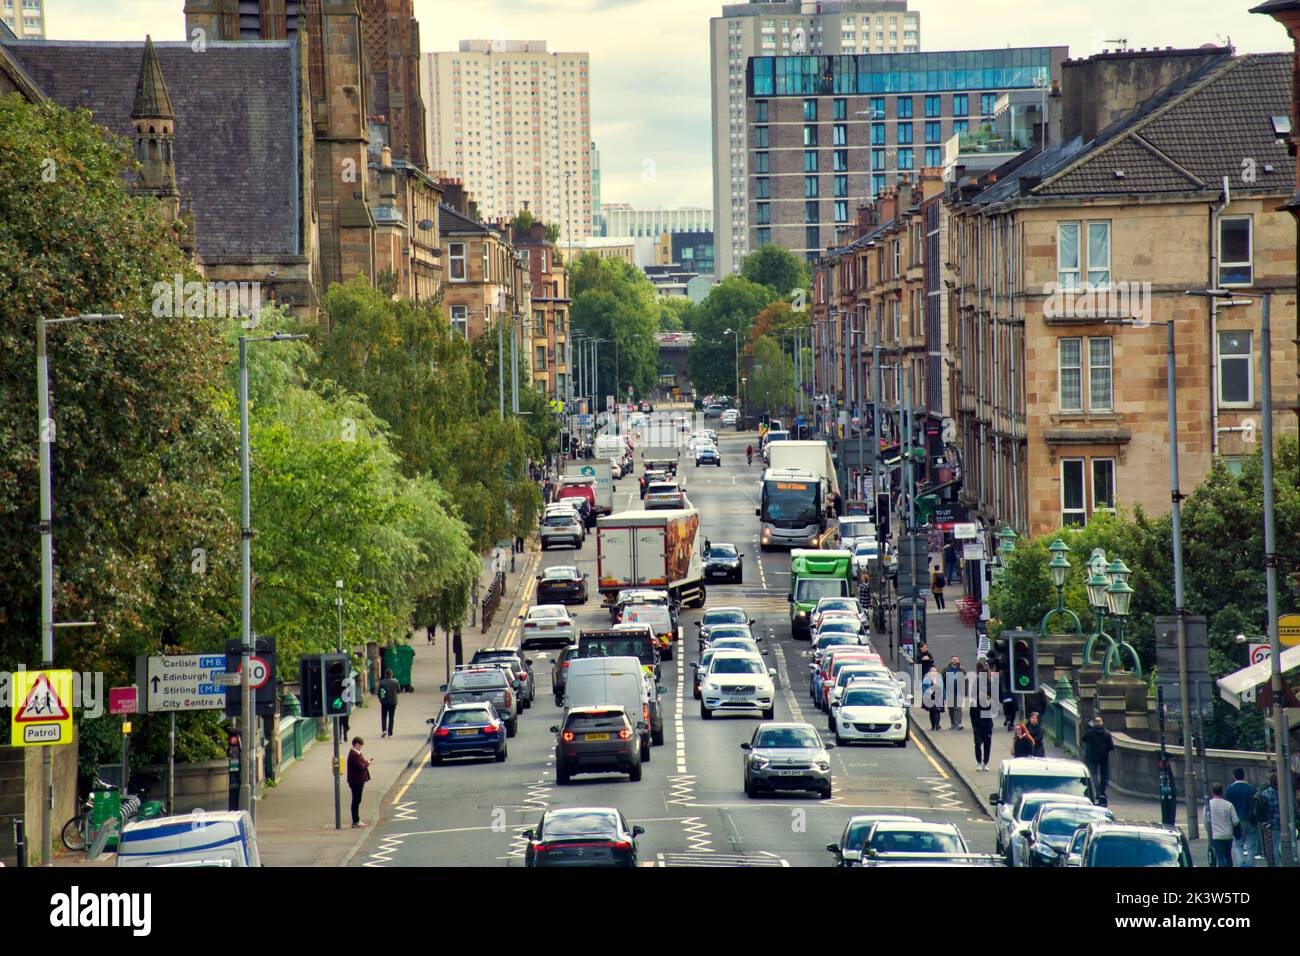 Gran carretera occidental con vistas a la ciudad, una de las zonas más frescas según el tiempo de espera Glasgow, Escocia, Reino Unido Foto de stock